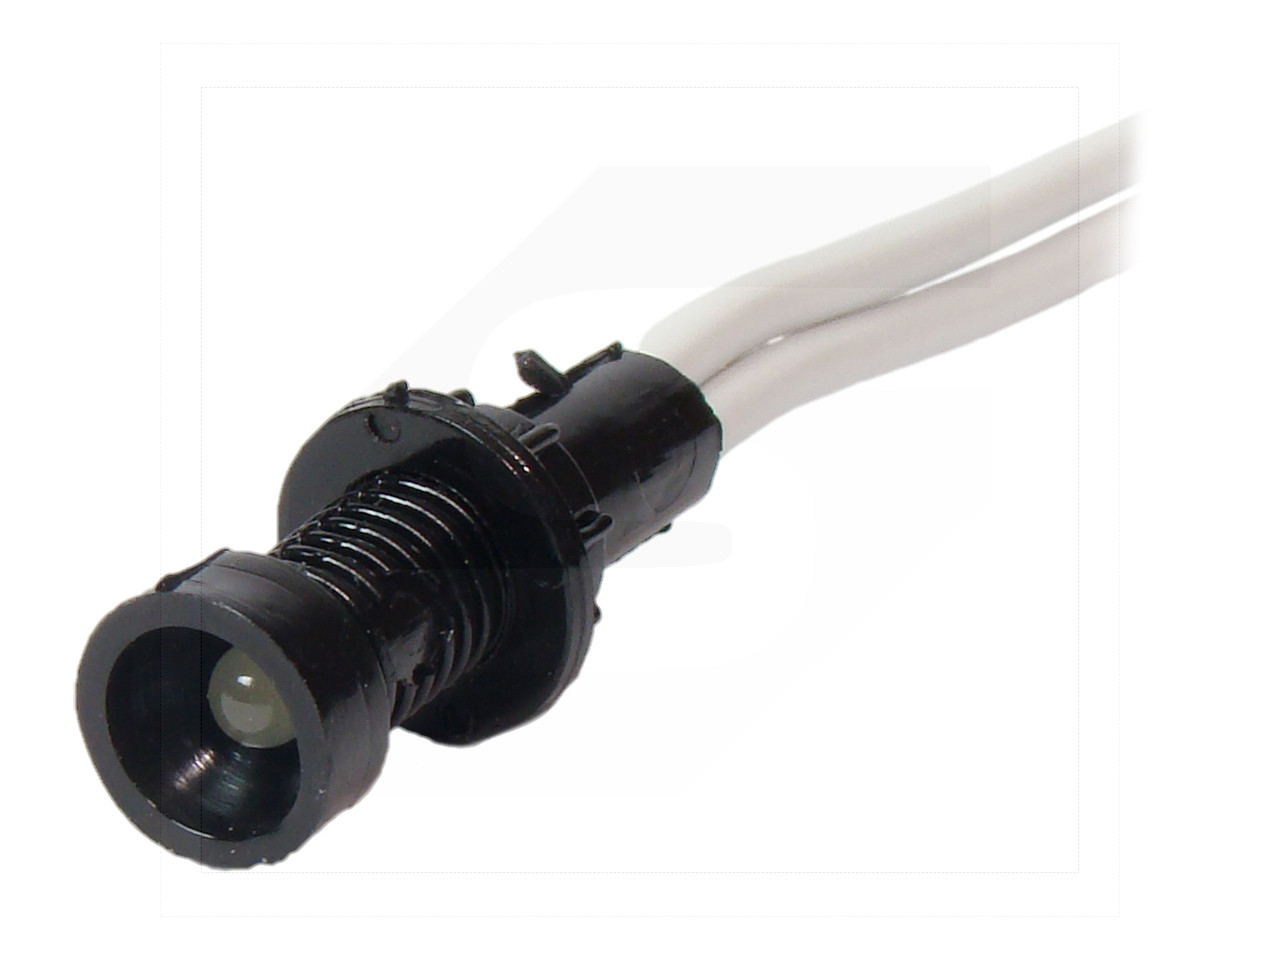 Lampka diodowa KLP-3/W 230VAC/DC typu LED 230V (klosz 3mm)/white